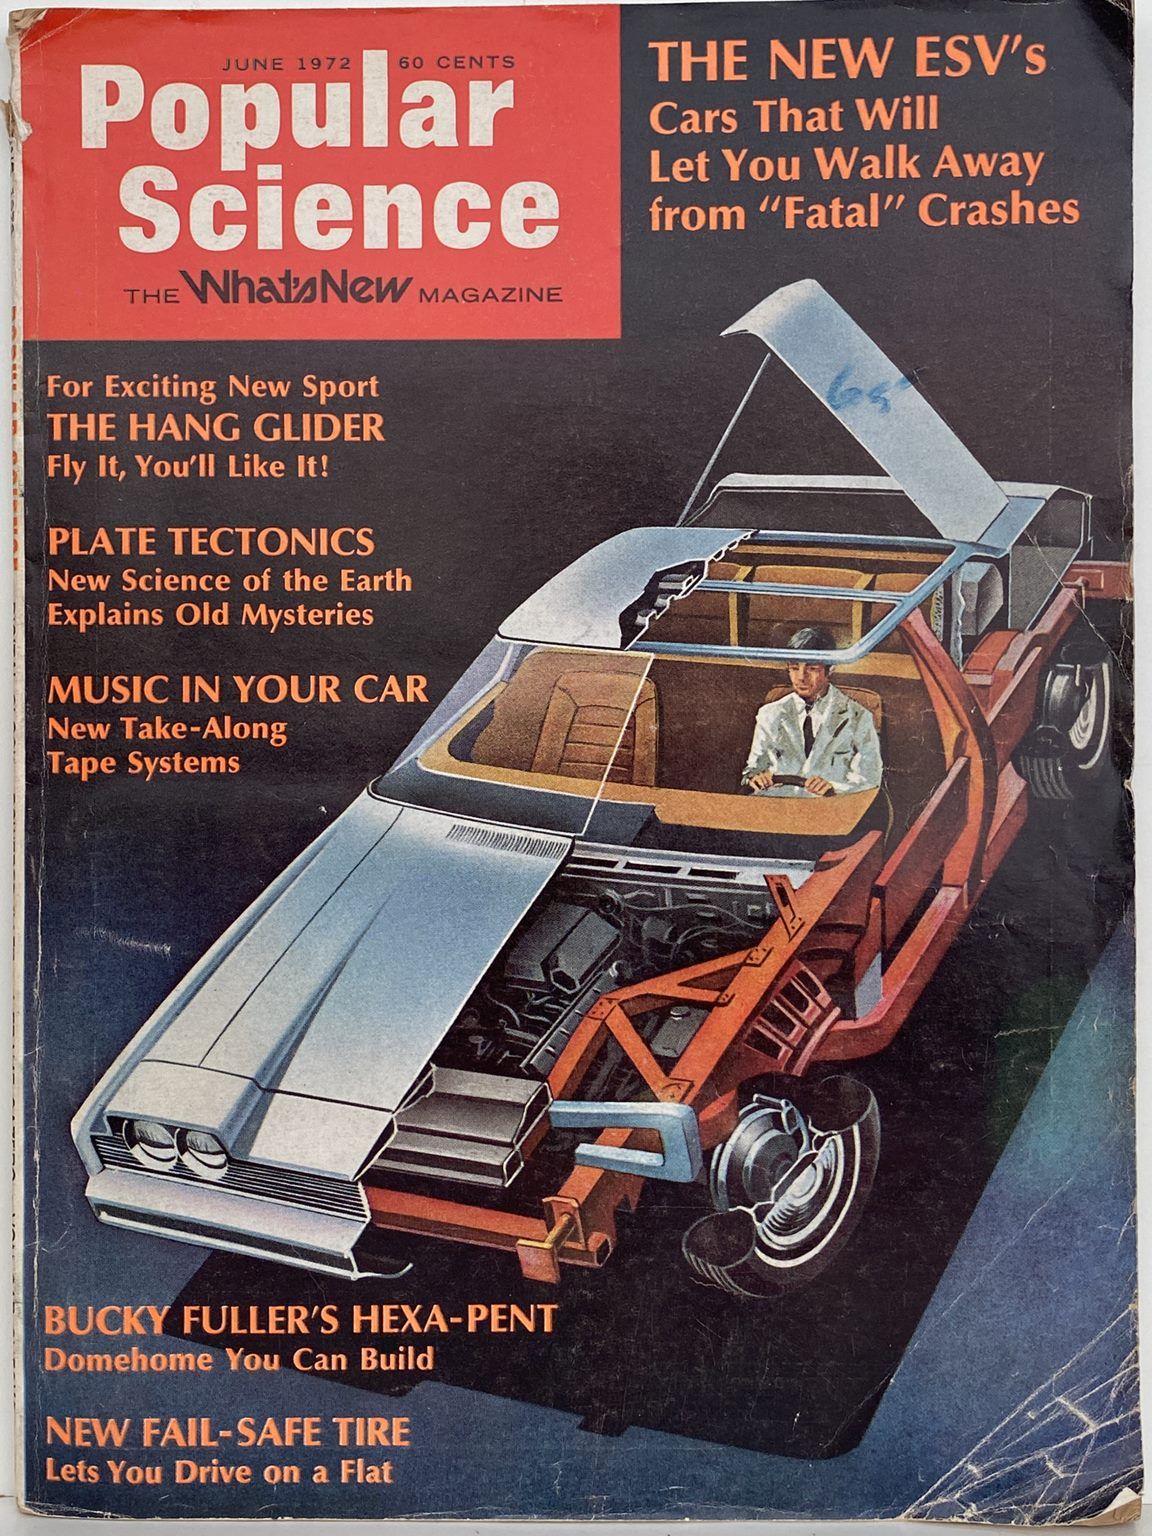 VINTAGE MAGAZINE: Popular Science - Vol. 200, No. 6 - June 1972